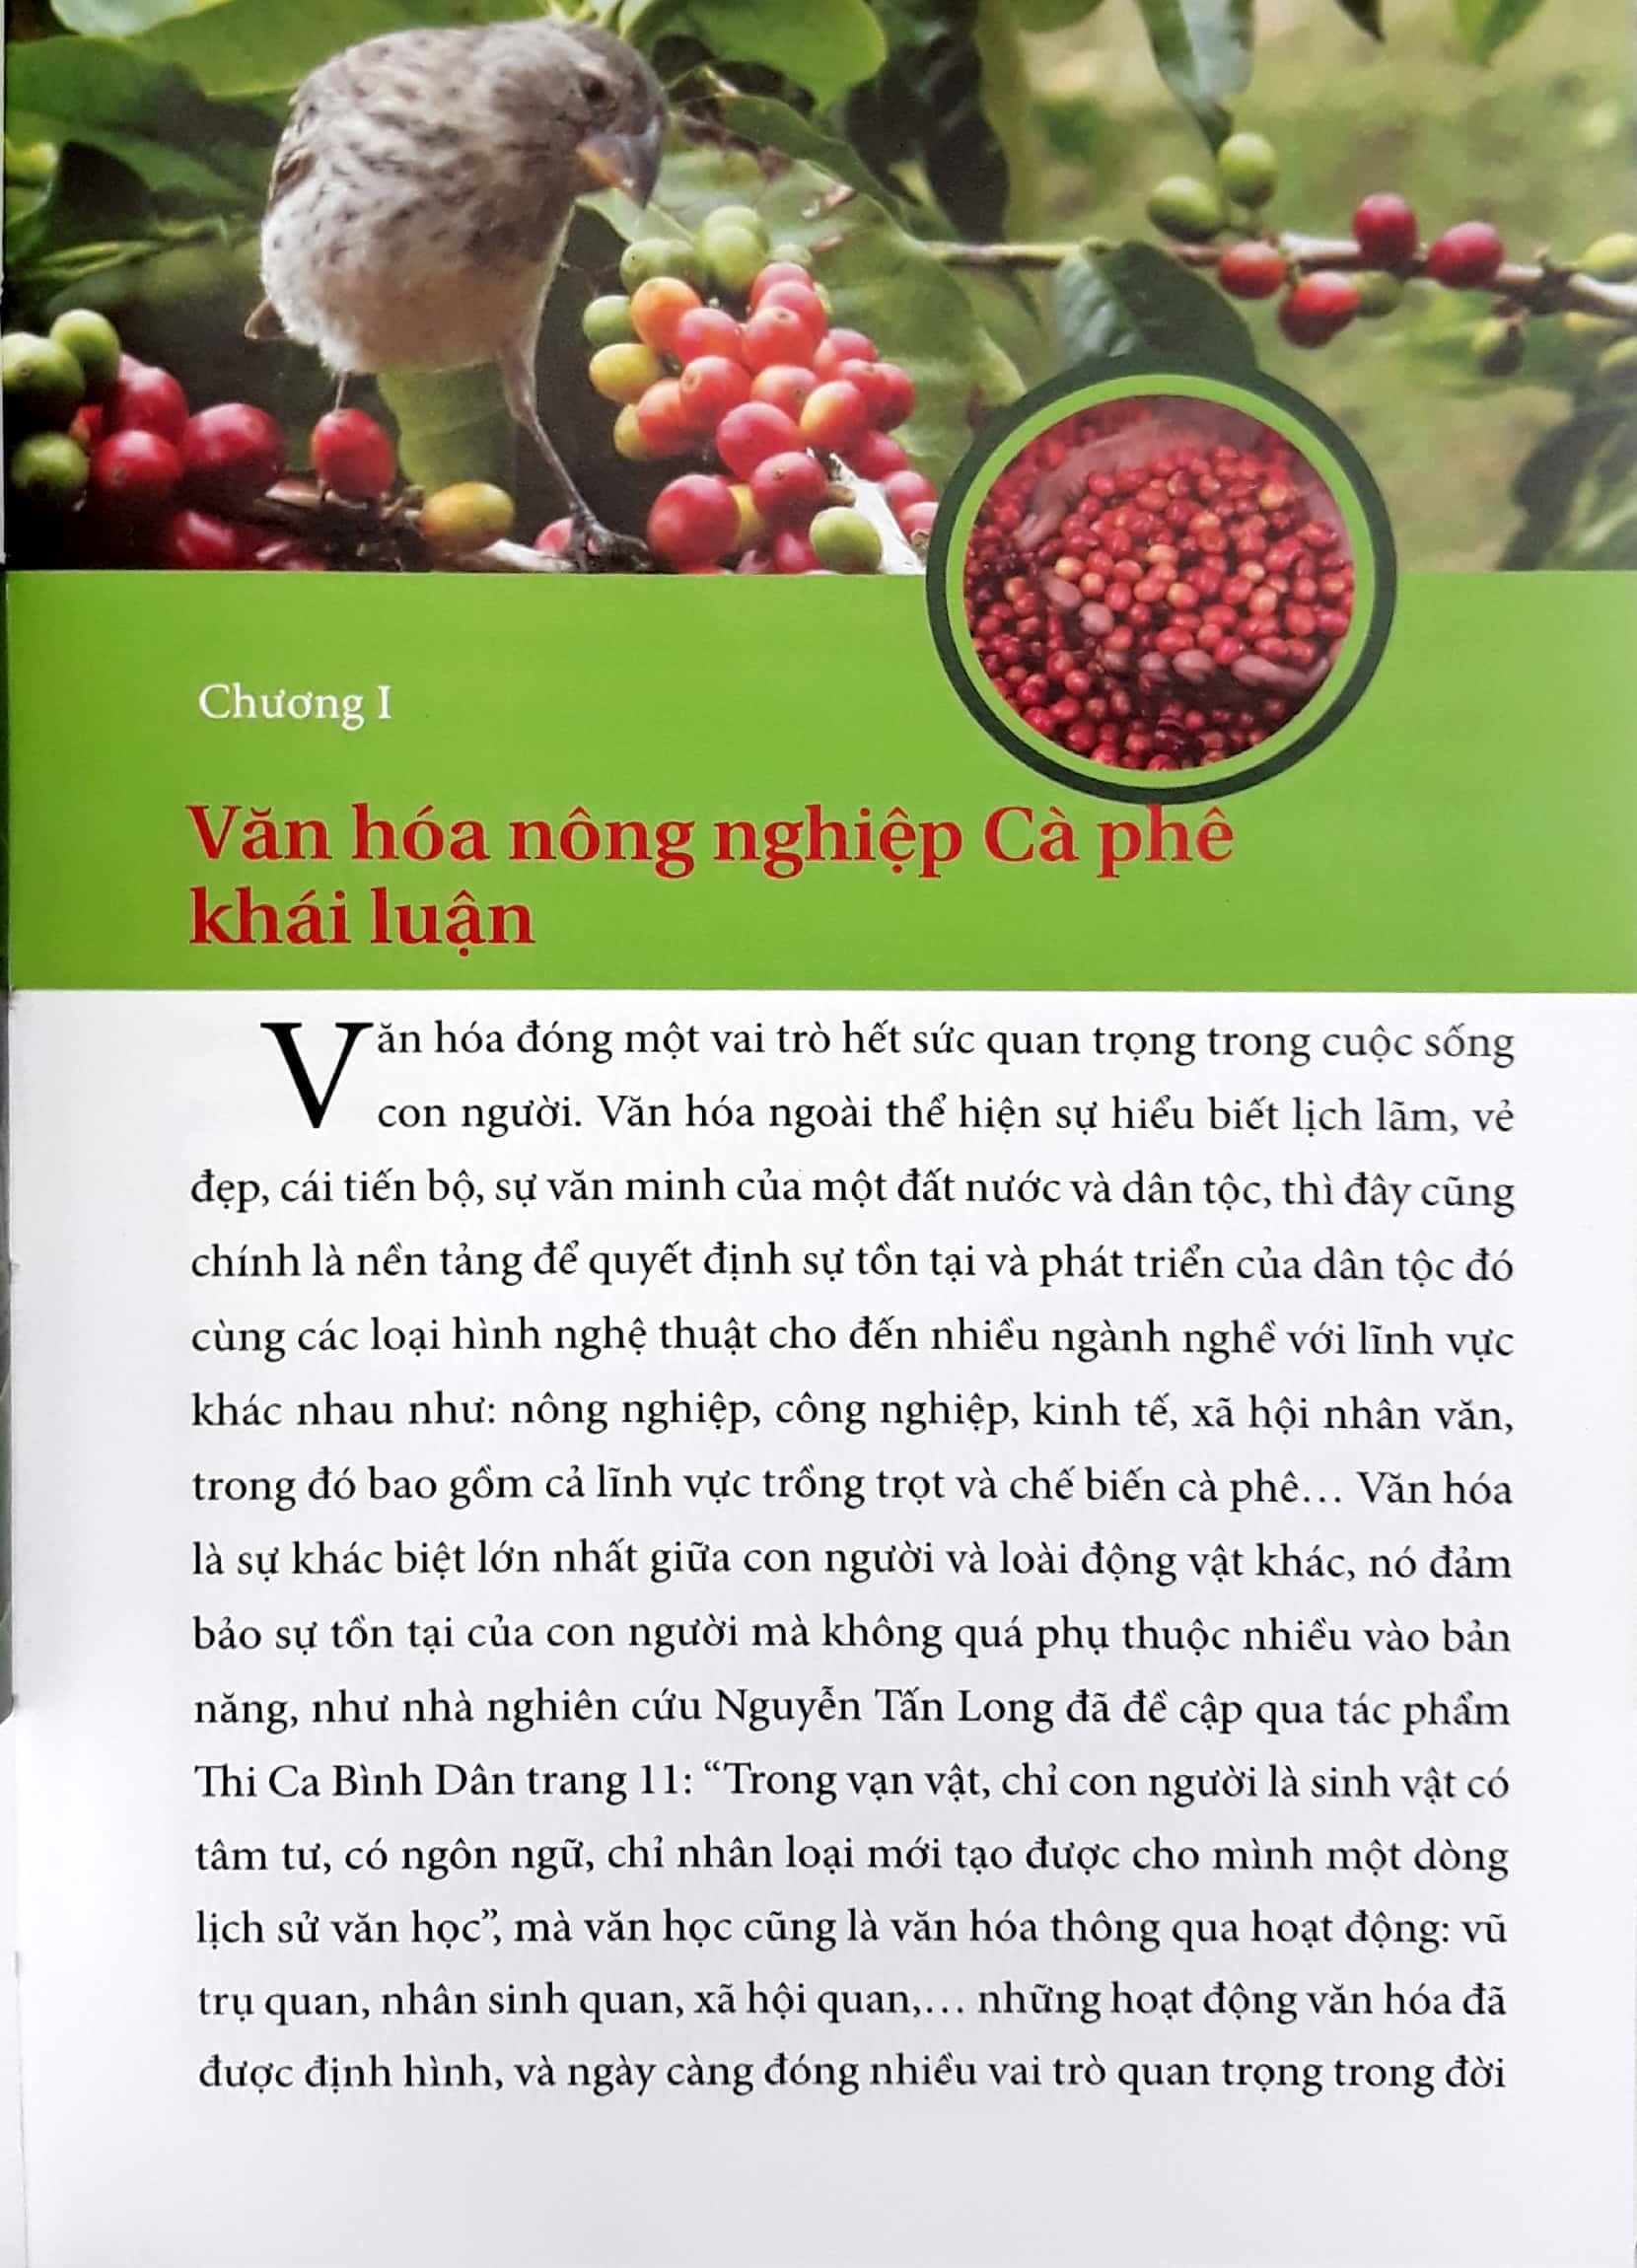 Sách Tình Yêu Cà Phê Việt